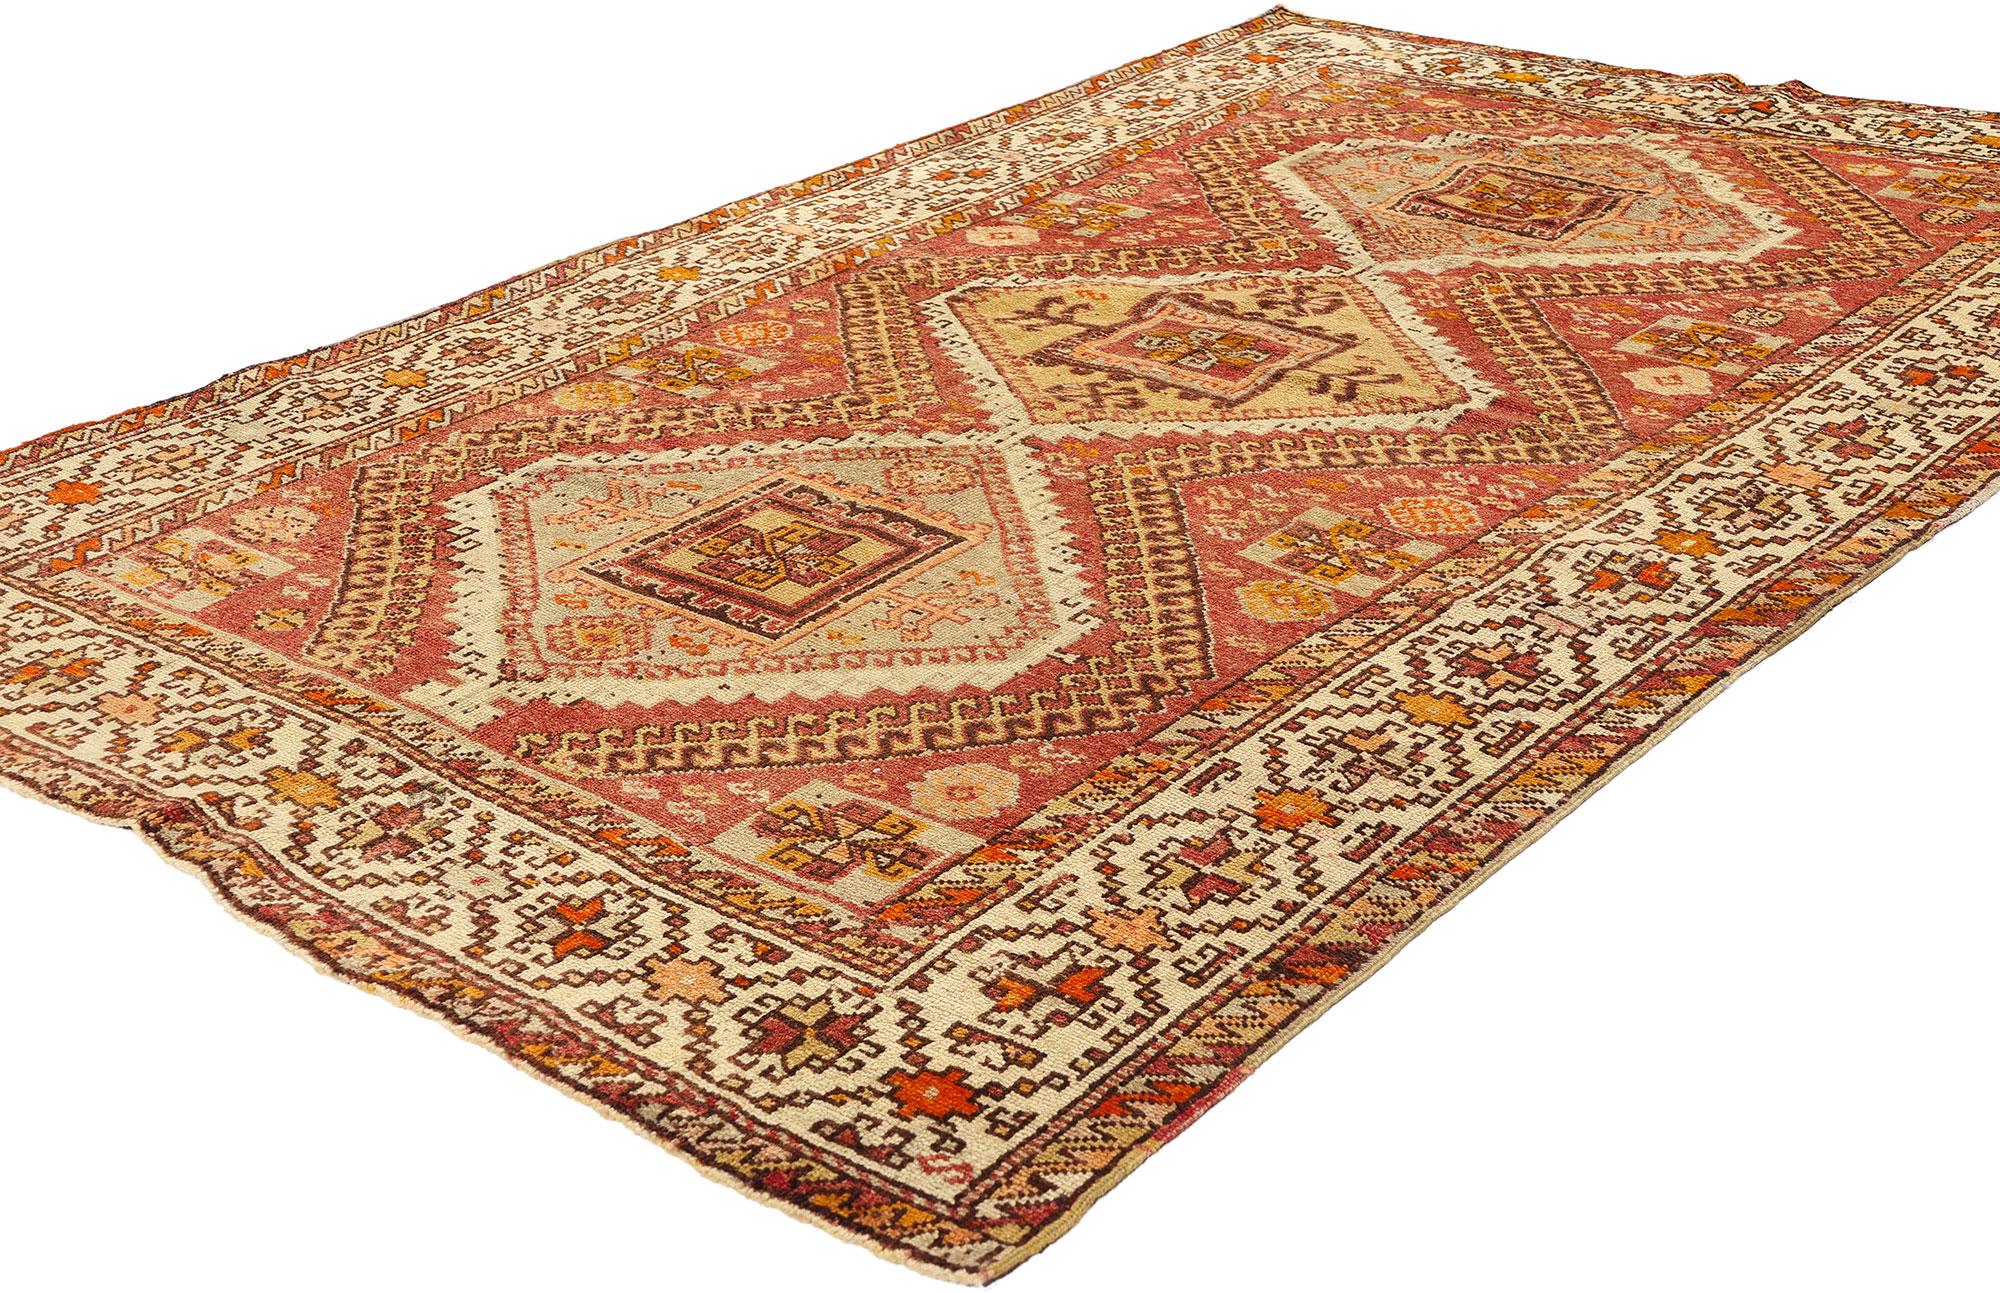 52107 Vintage Red Turkish Oushak Rug, 04'04 x 07'00. Les tapis tribaux turcs Oushak, ornés de captivants médaillons en forme de losange à crochets, proviennent du cœur historique de fabrication de tapis d'Oushak, dans l'ouest de la Turquie. Ces